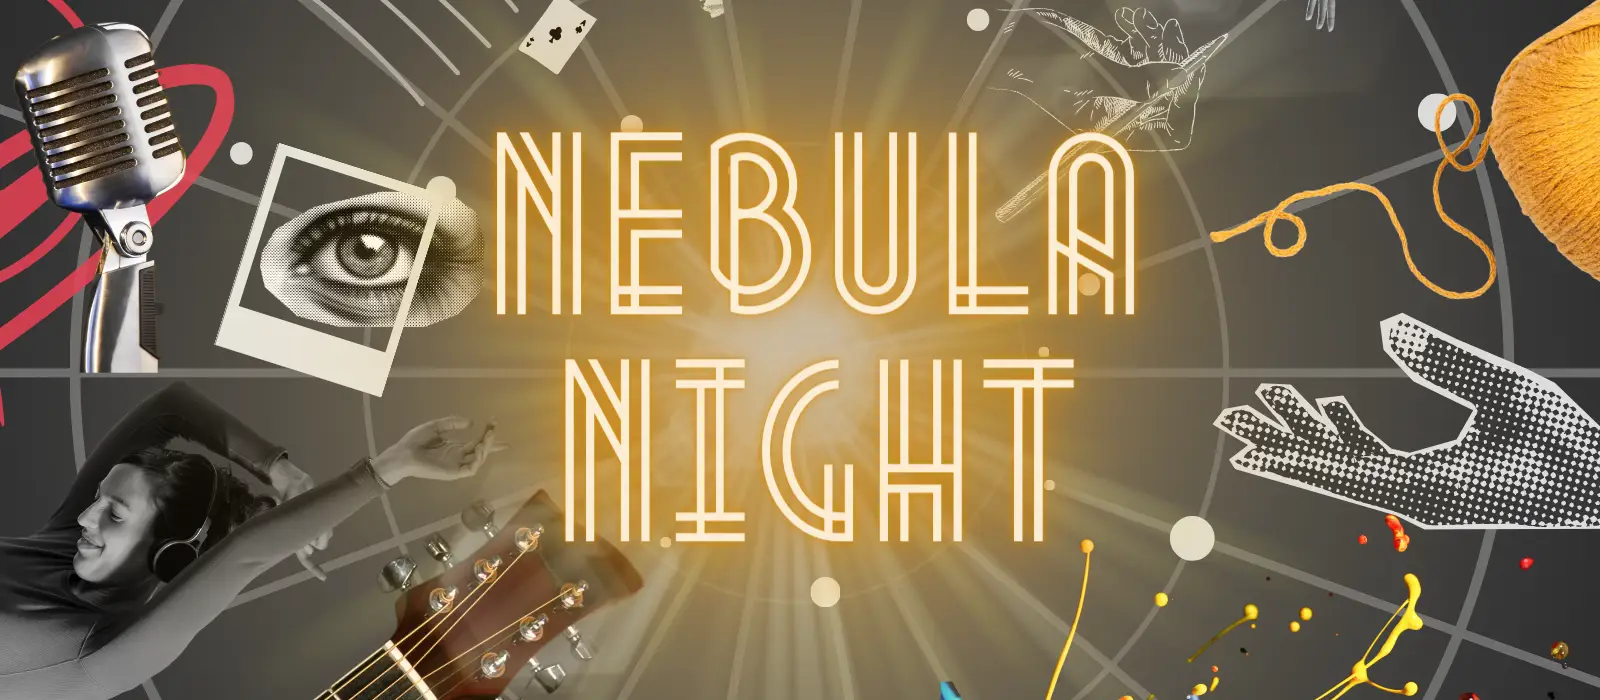 Nova Comedy Collective Nebula Night